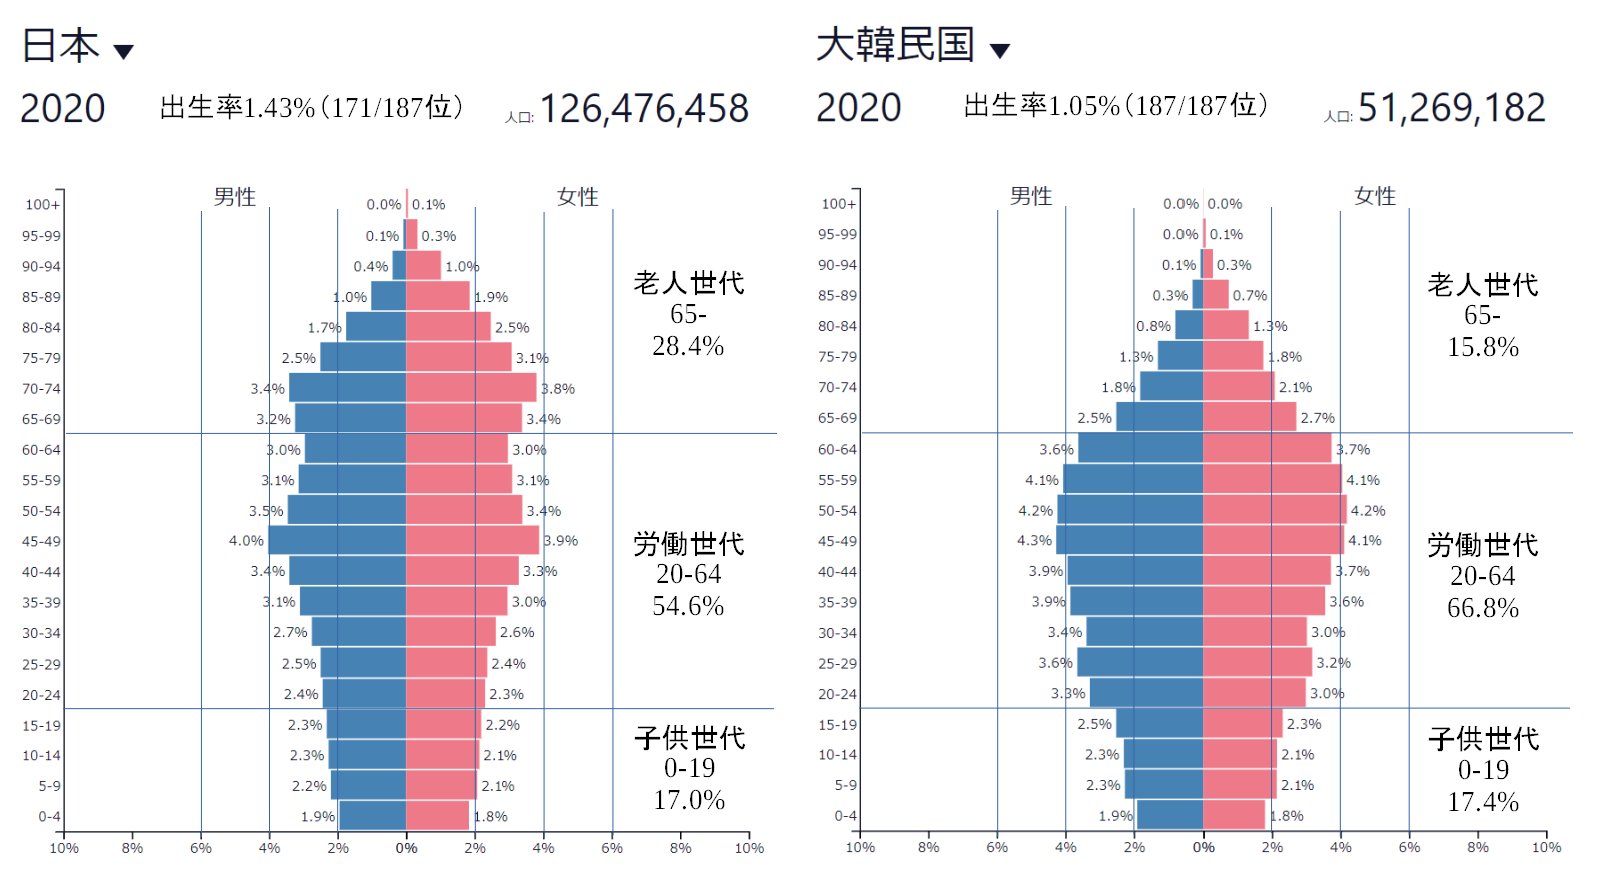 Shig シグ Twitter પર 15 韓国 中国との人口ピラミッドの比較です 韓国 の出生率は1 05で日本の1 43よりもかなり低いのですが 今現在高齢化があまり進んでおらず労働人口が多いのであまり深刻な問題として認識されていない